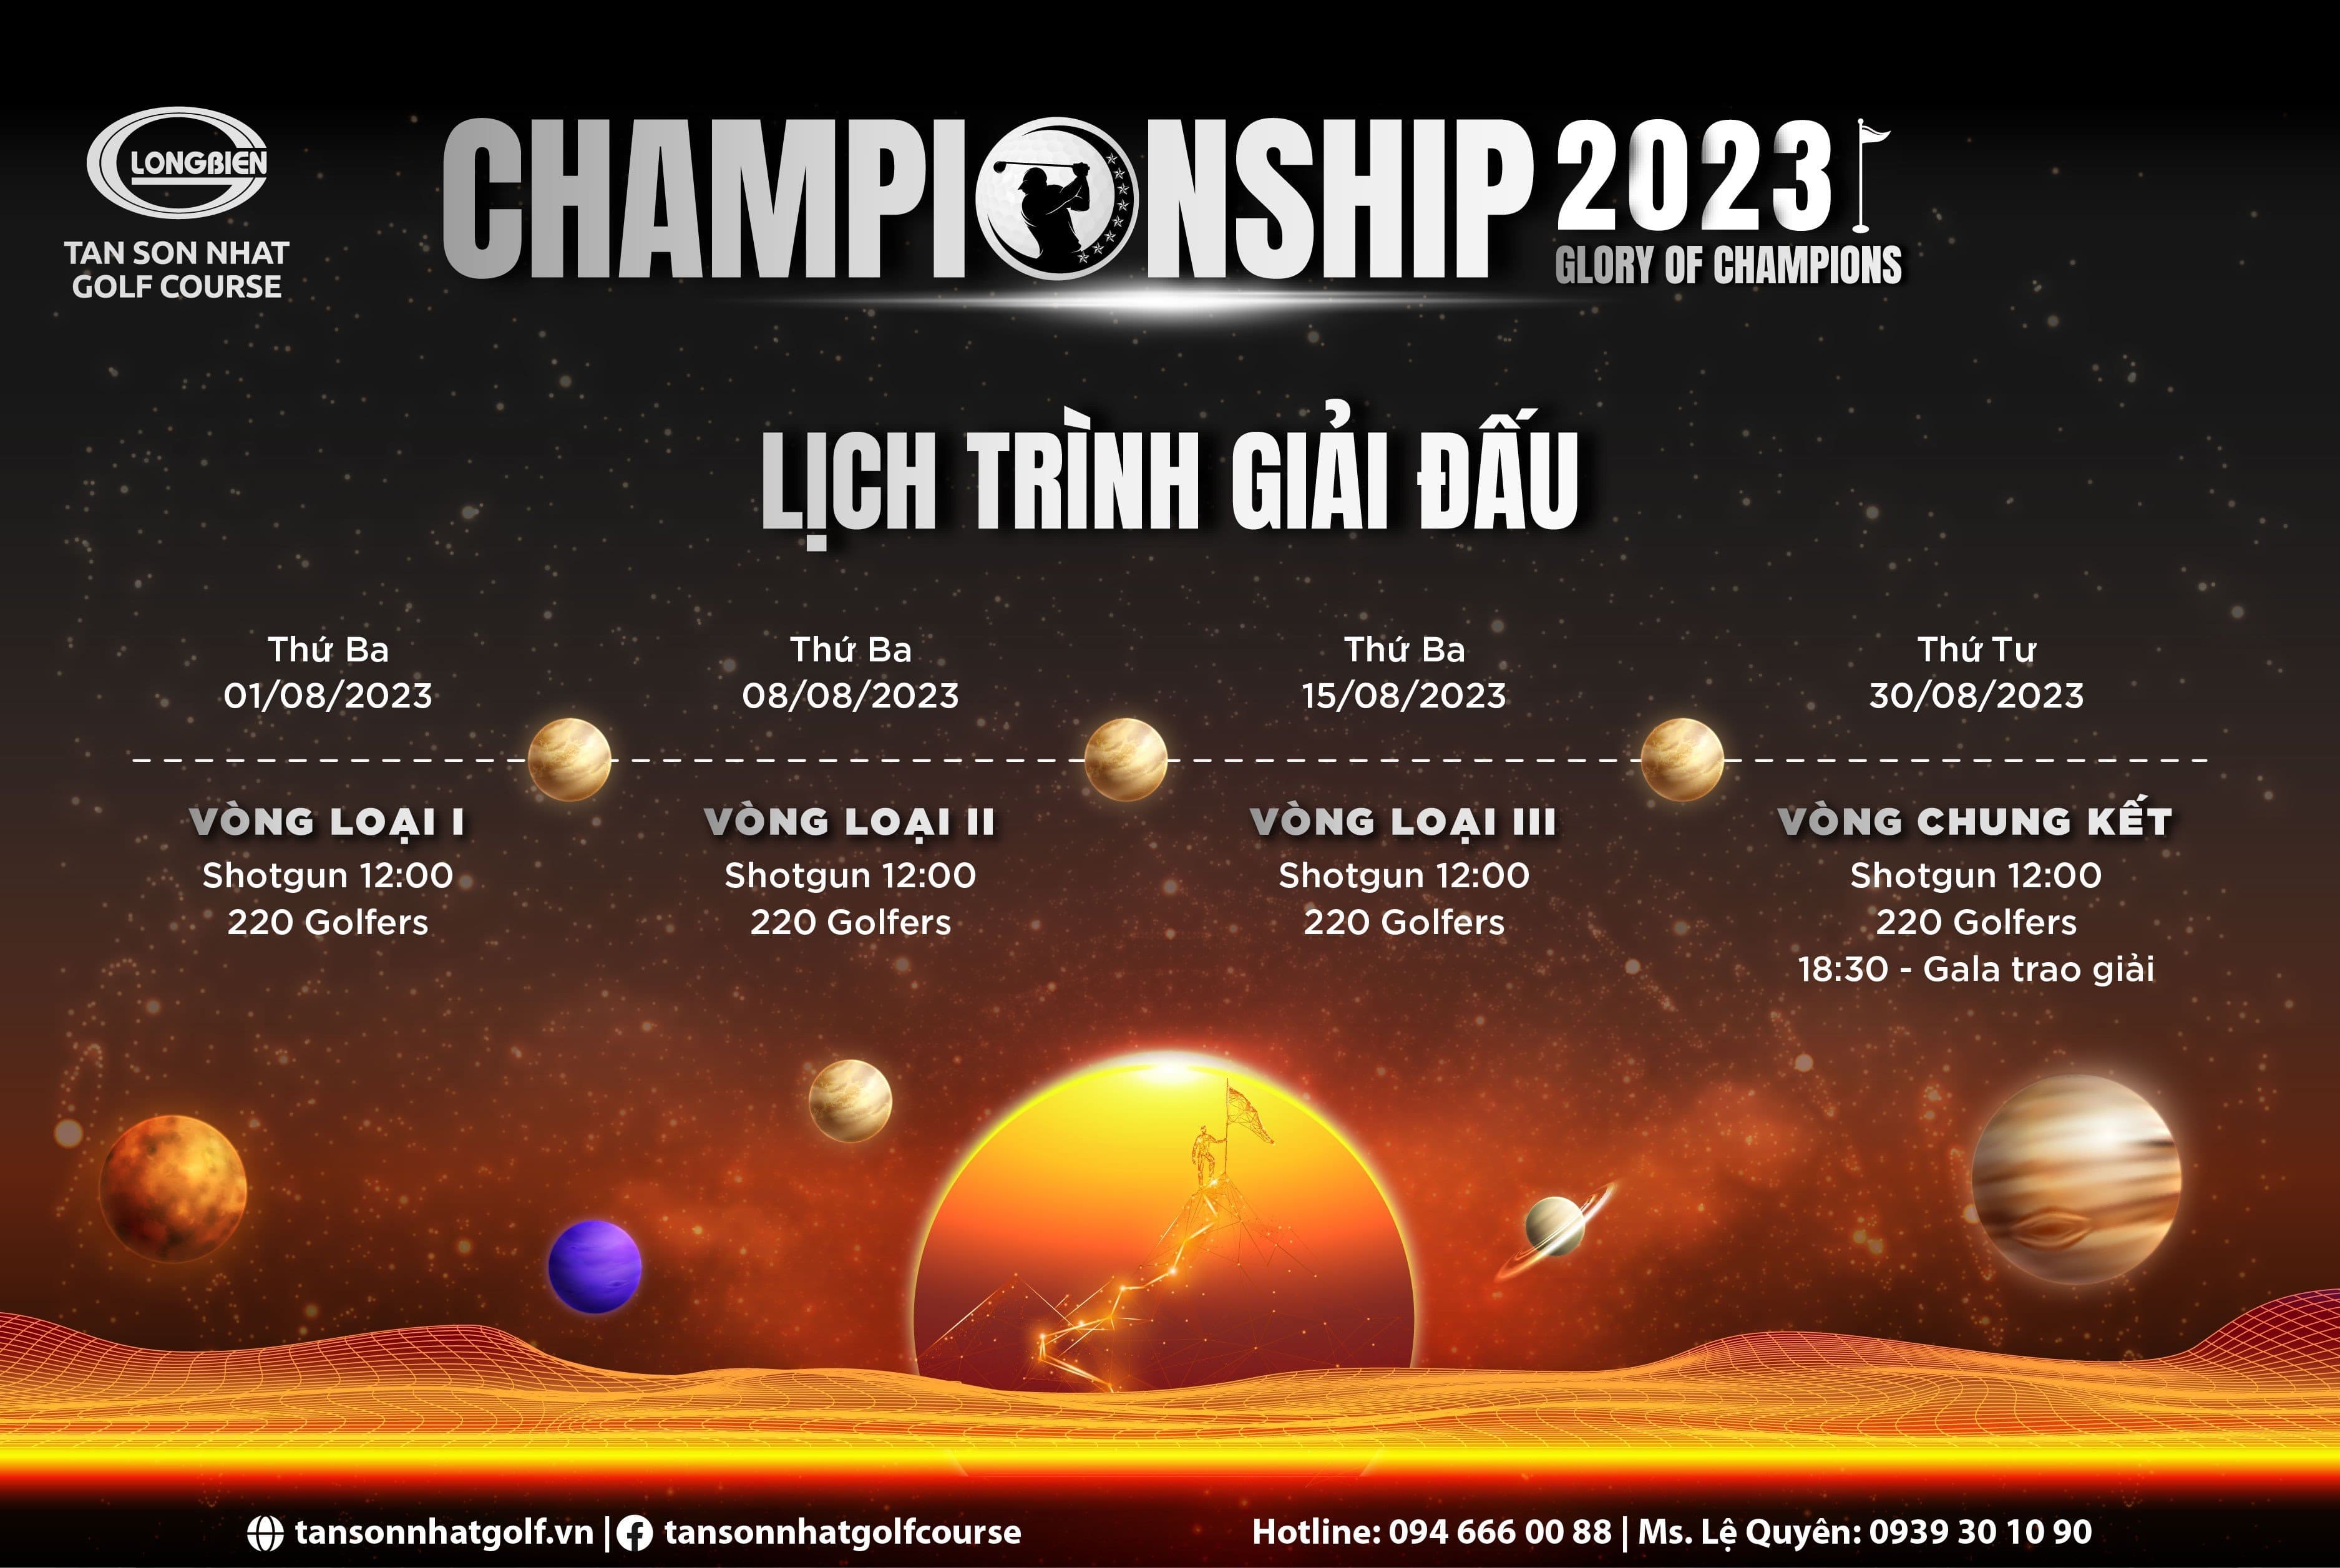 GLORY OF CHAMPIONS 2023 - GIẢI GOLF THƯỜNG NIÊN TAN SON NHAT GOLF COURSE CHAMPIONSHIP